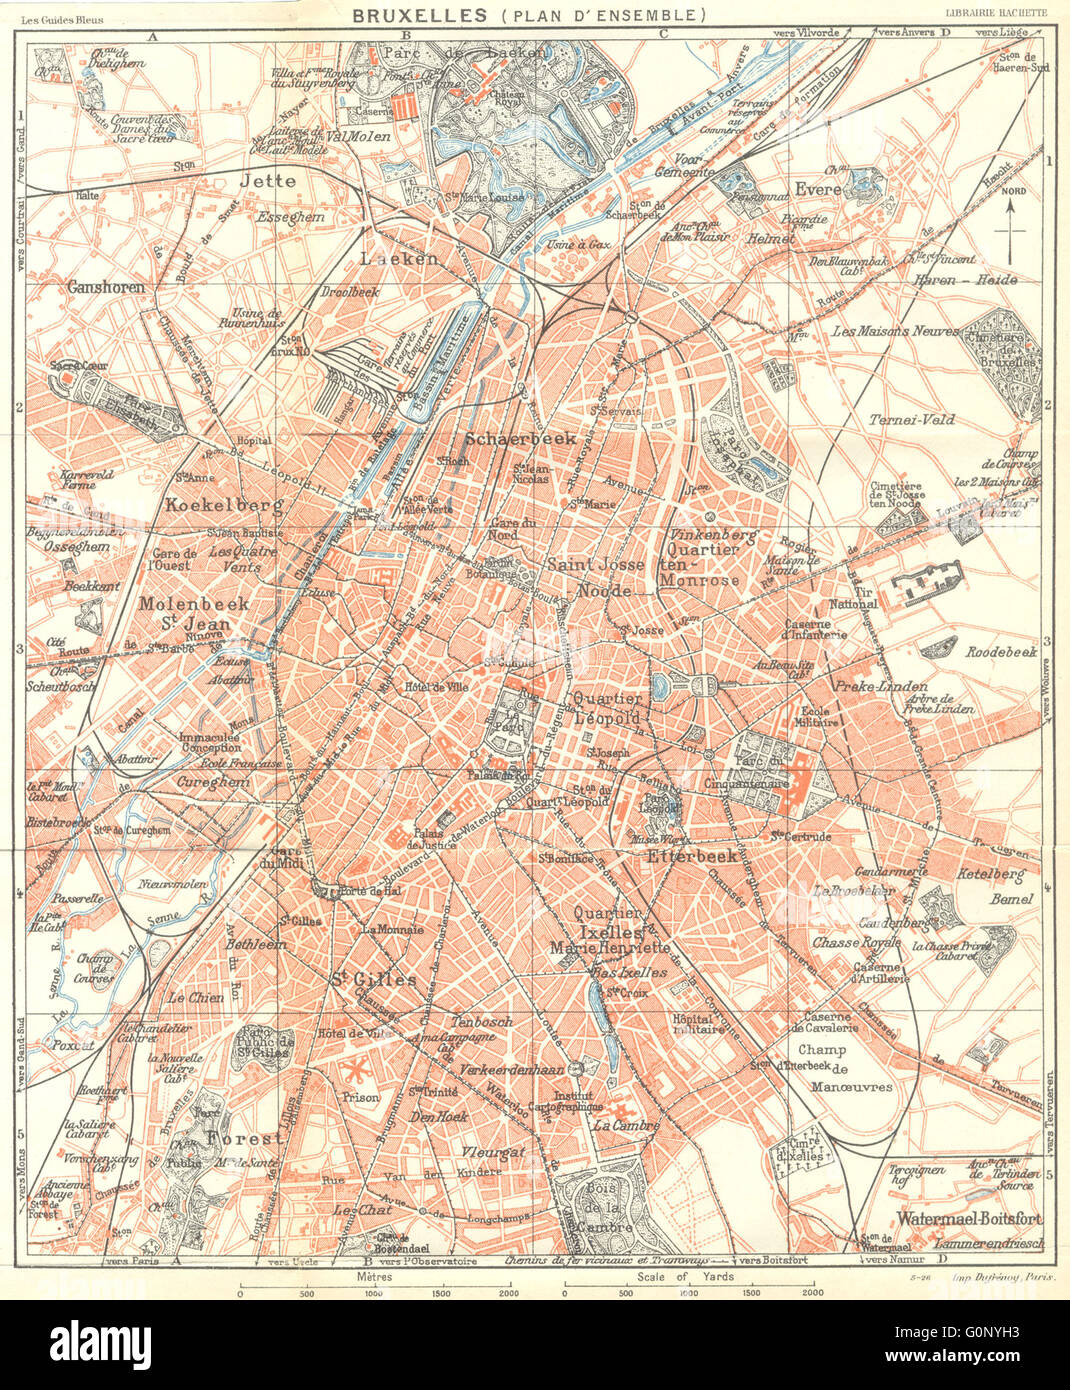 BRUSSELS BRUXELLES. Plan d'ensemble. Town city ville plan carte map, 1924 Stock Photo